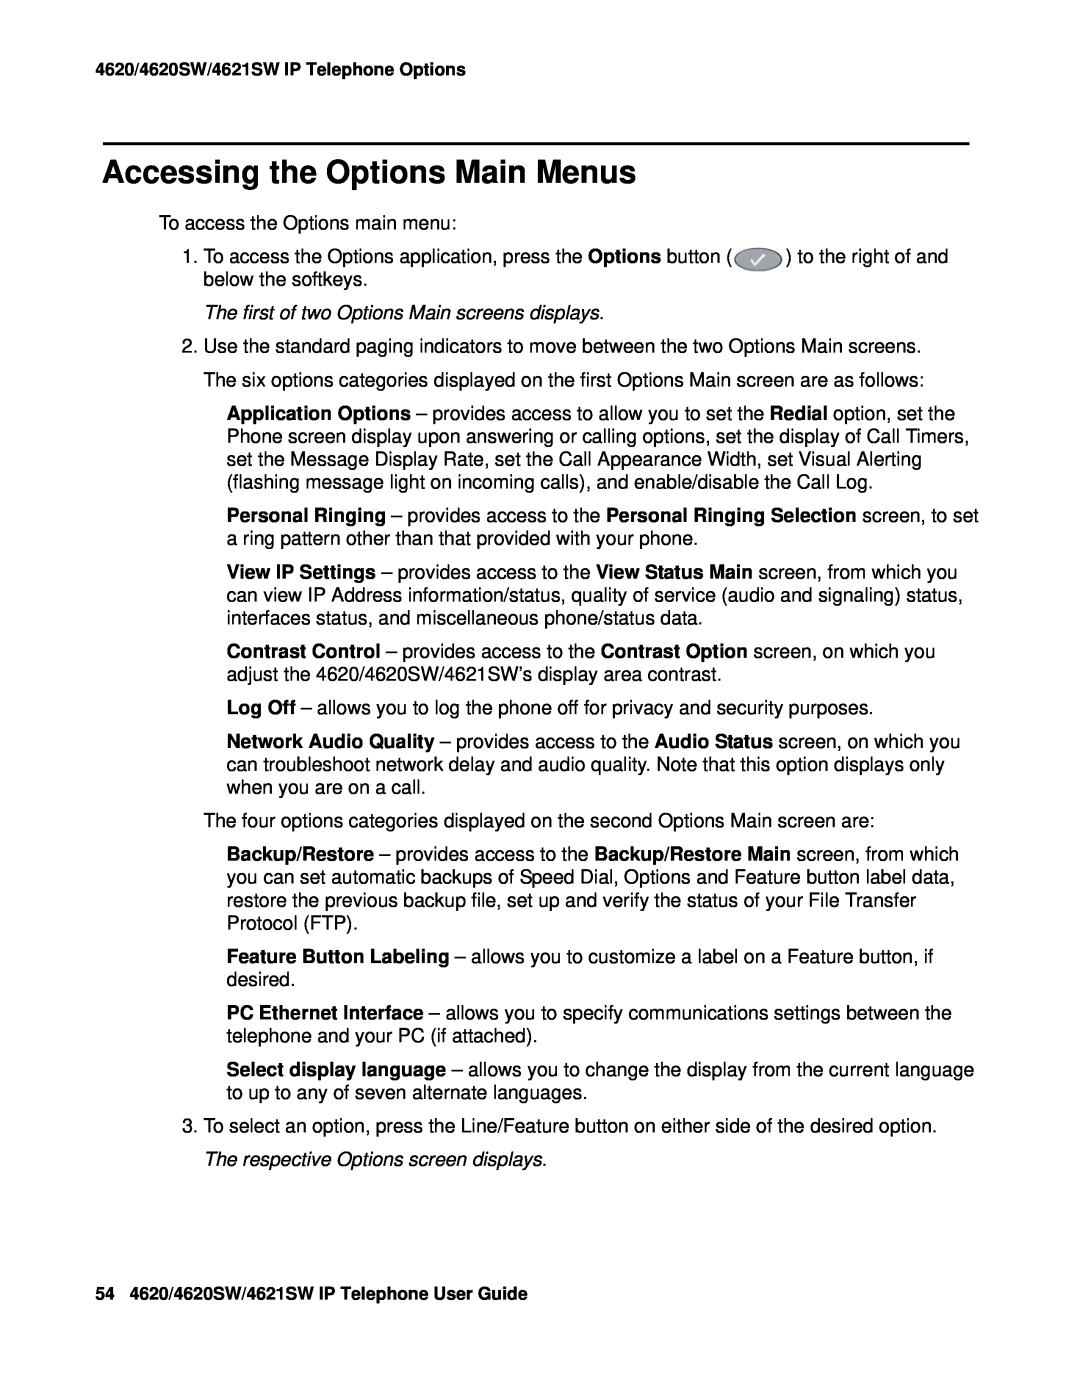 Avaya 4620SW, 4621SW manual Accessing the Options Main Menus 